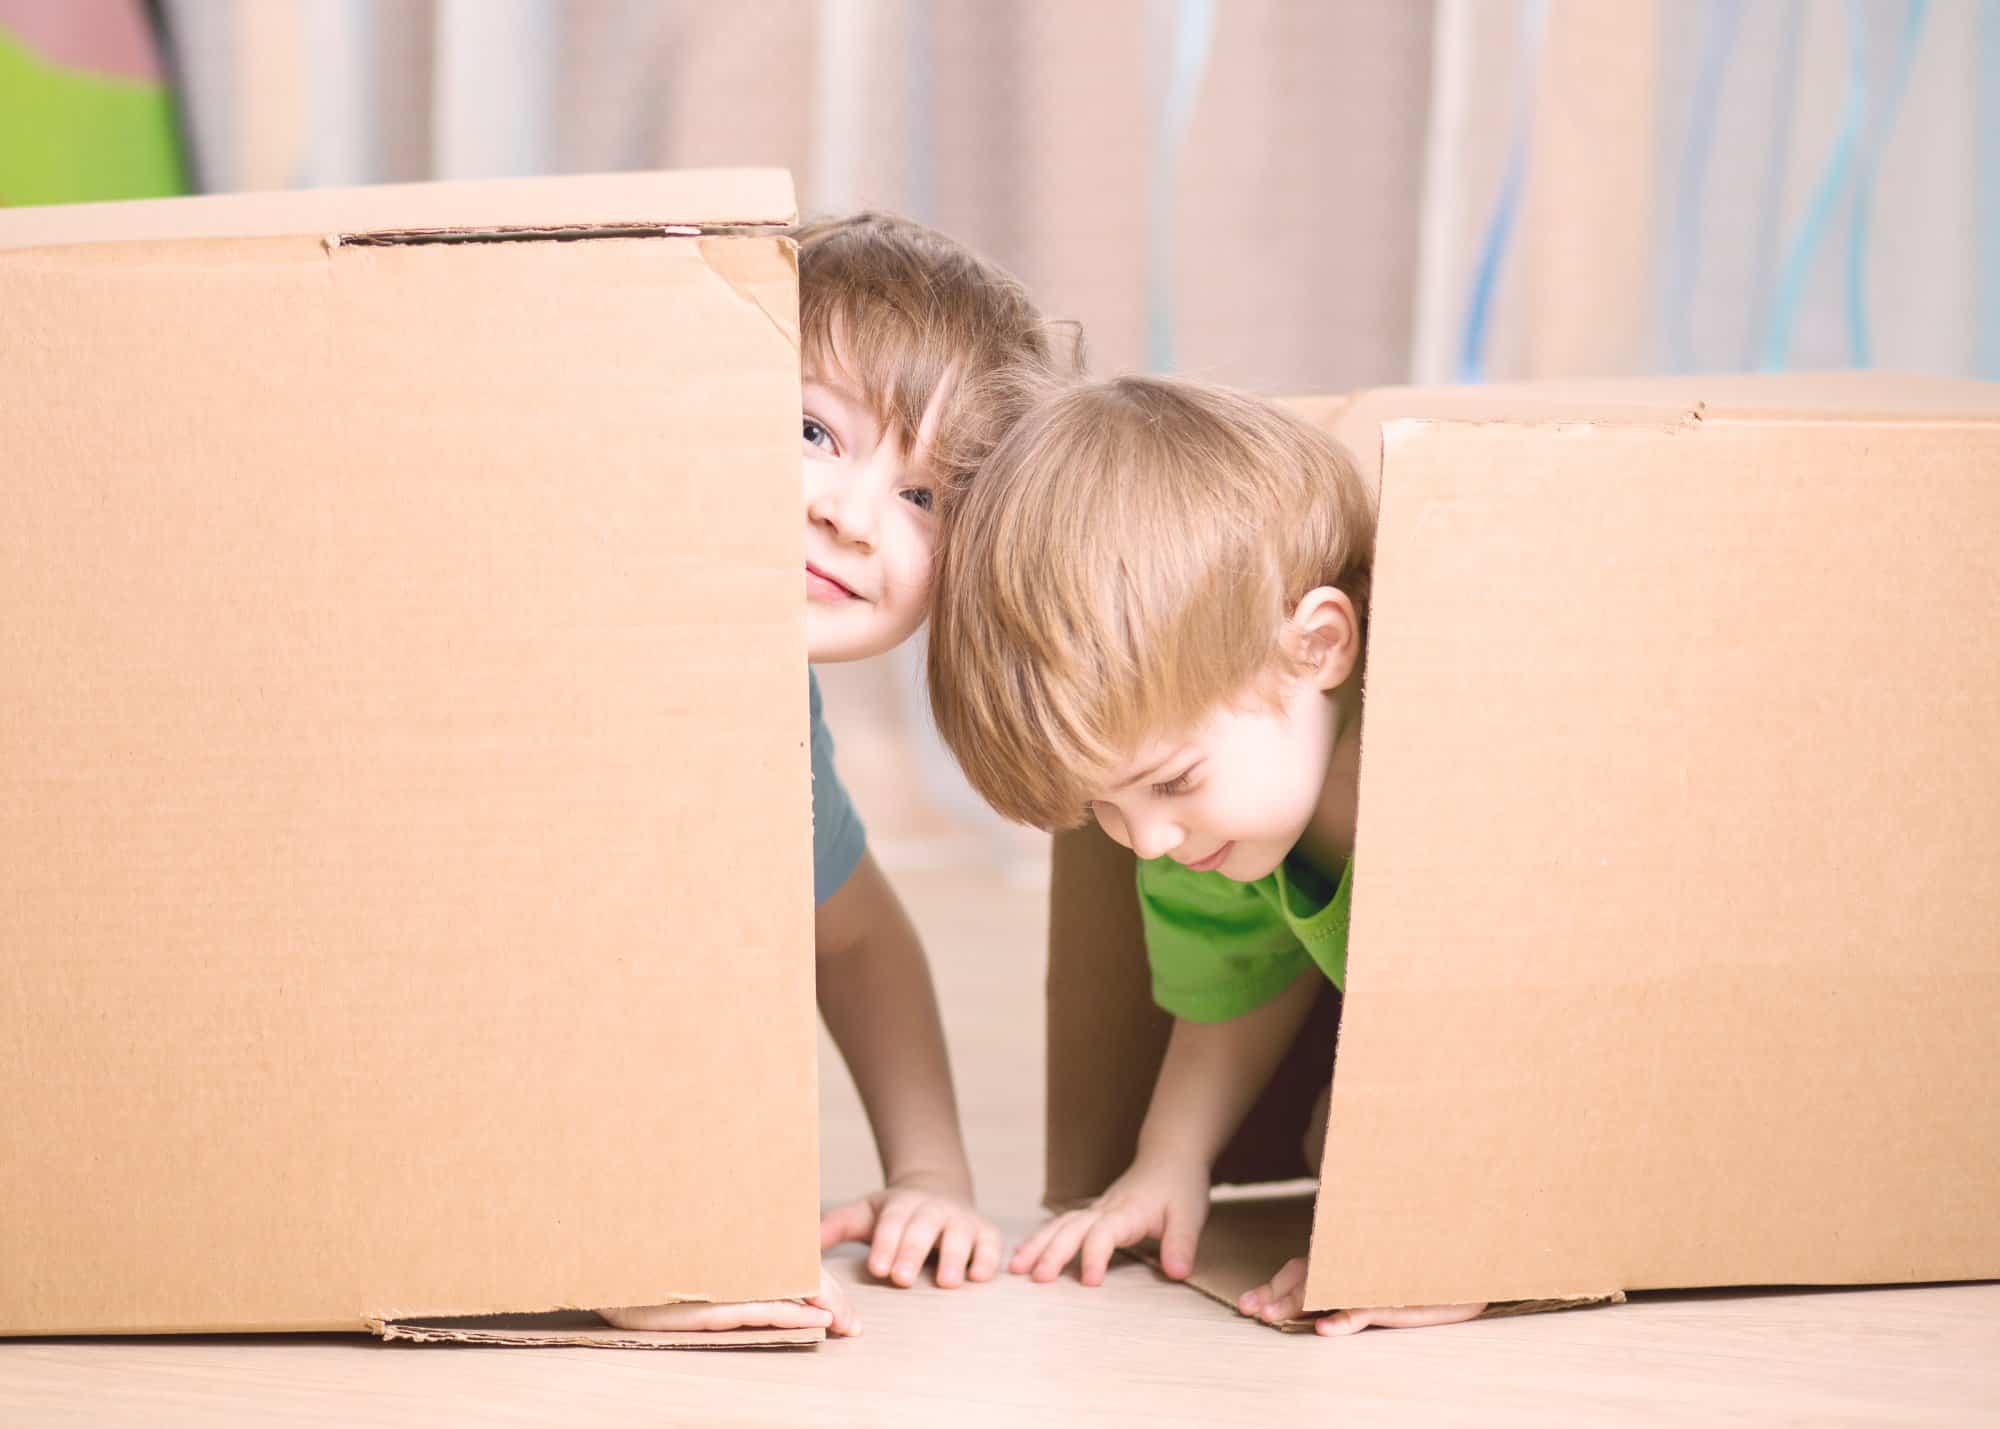 Мальчик в коробке 2009. Ребенок в картонной коробке. Дети в картонных коробках. Мальчик в картонной коробке. Дети играют с коробками.